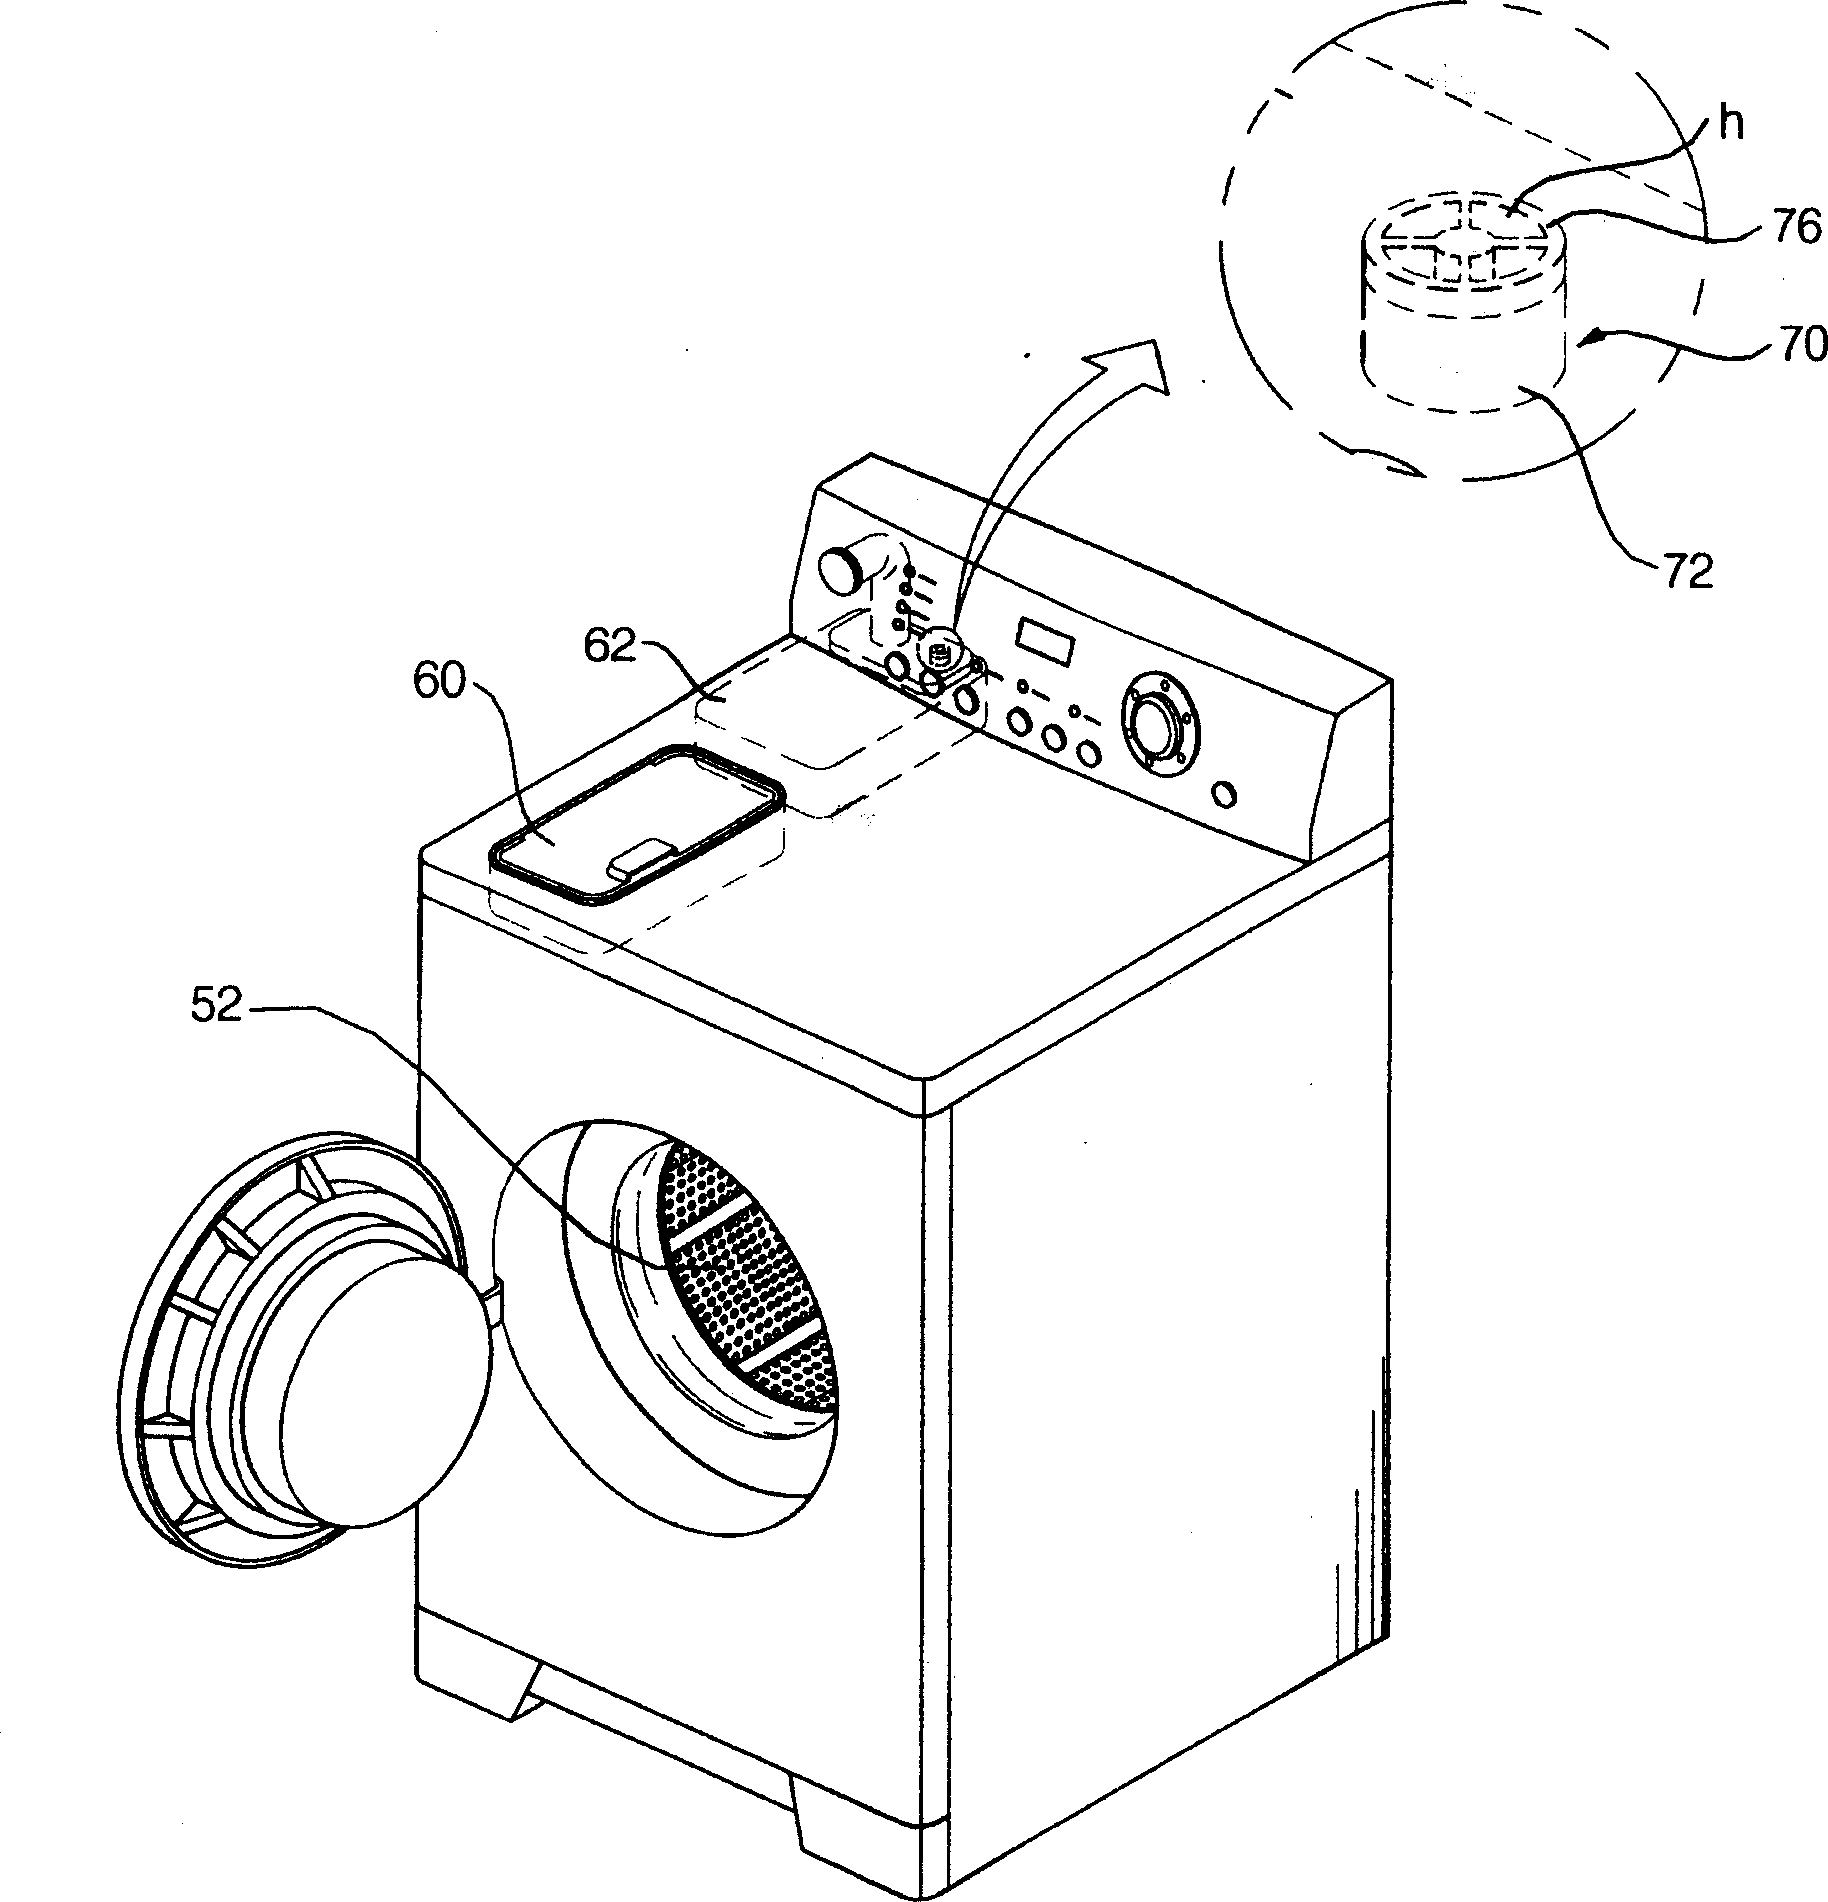 Detergent put-in device for washing machine